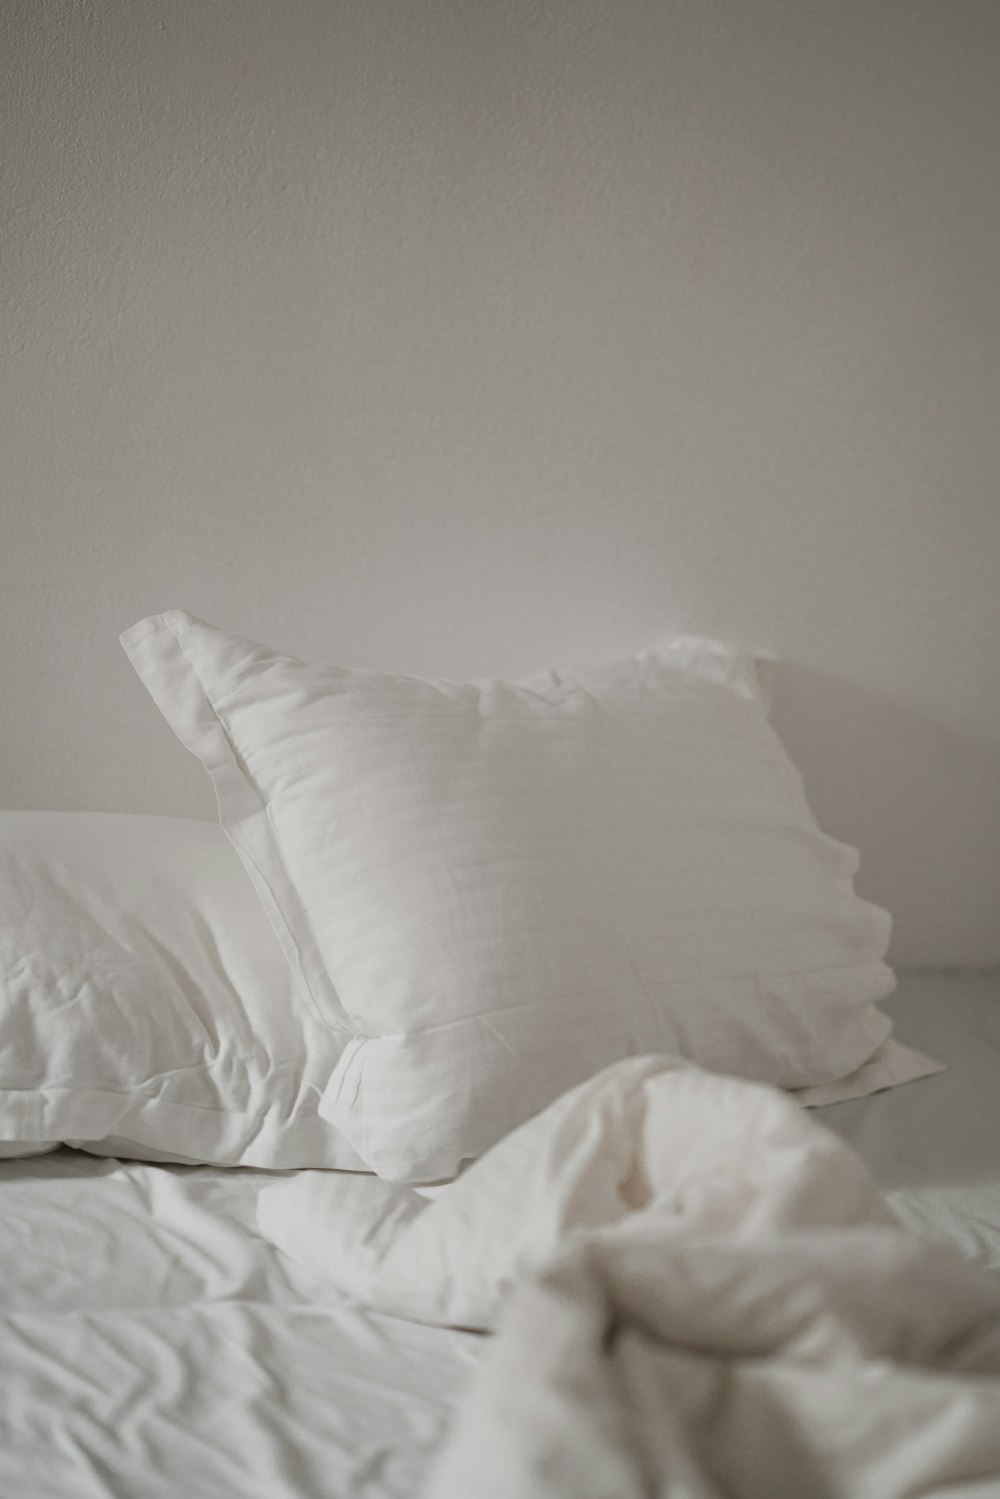 travesseiro de cama branco contra parede branca